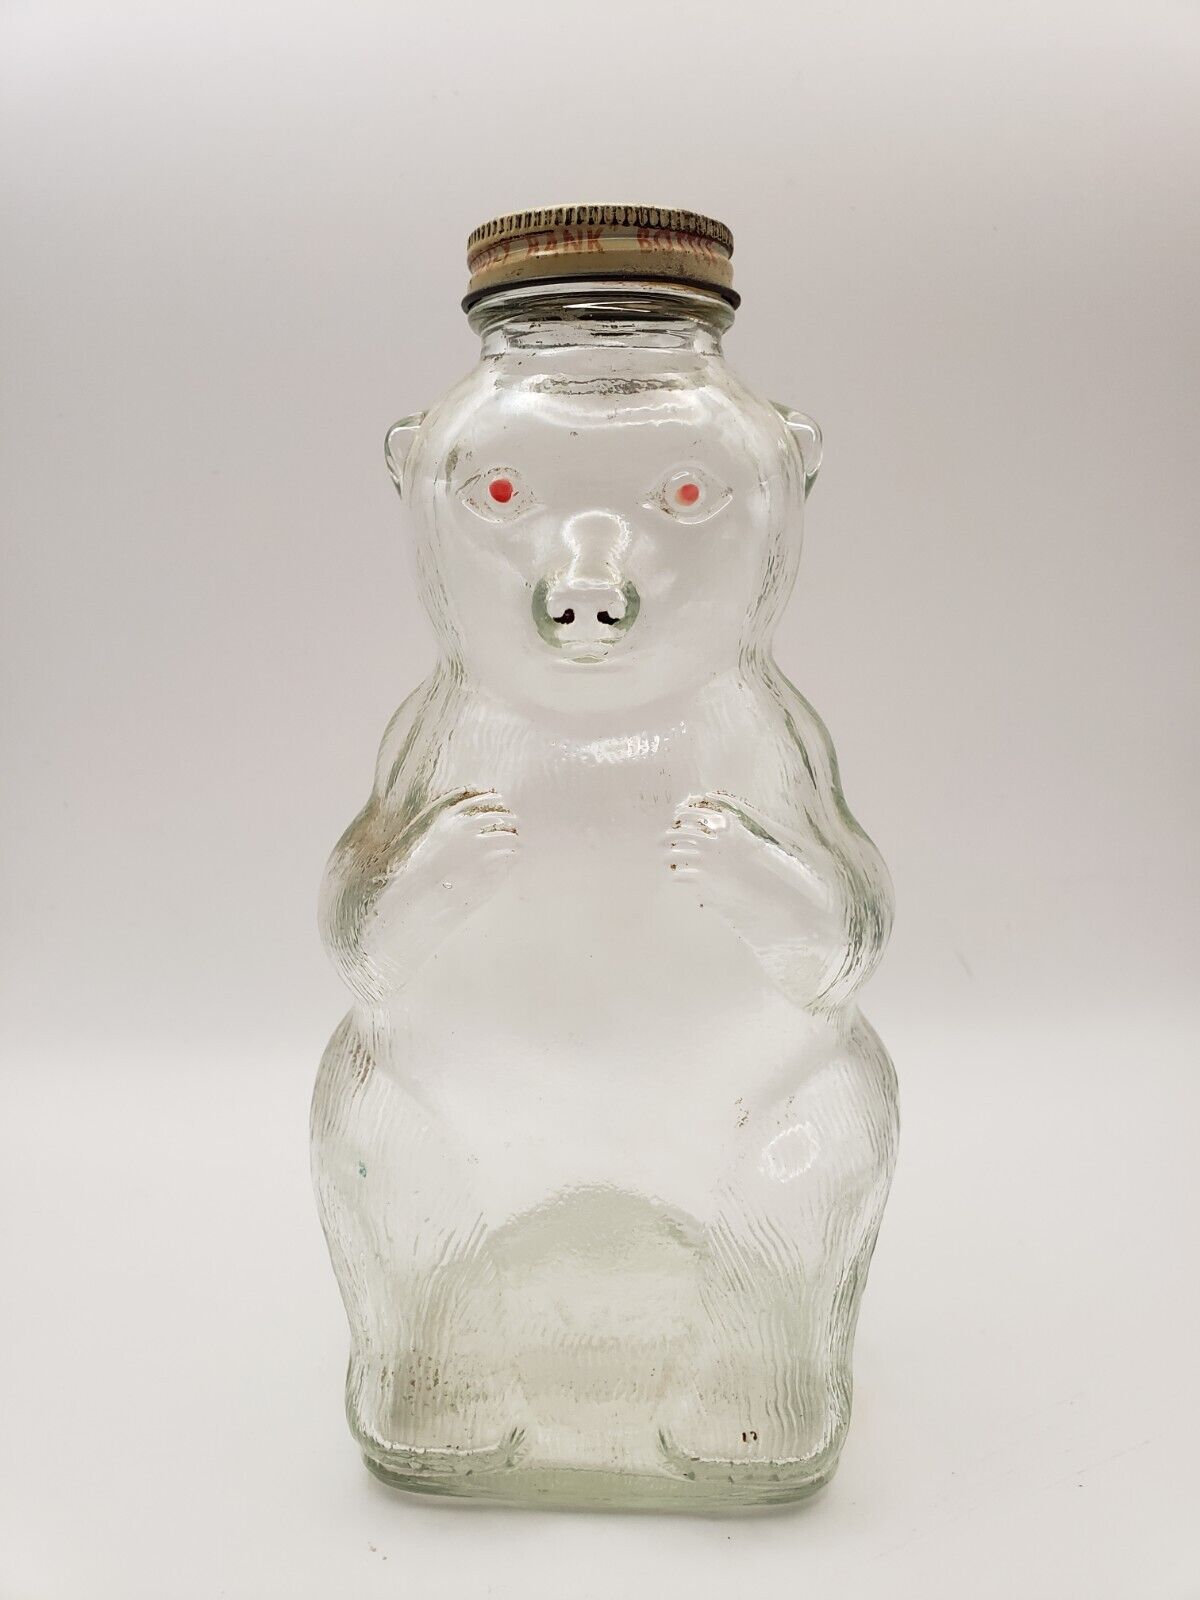 Vintage Snow Crest Beverages Glass Syrup Bear Bank Bottle Salem Mass 7” With Cap